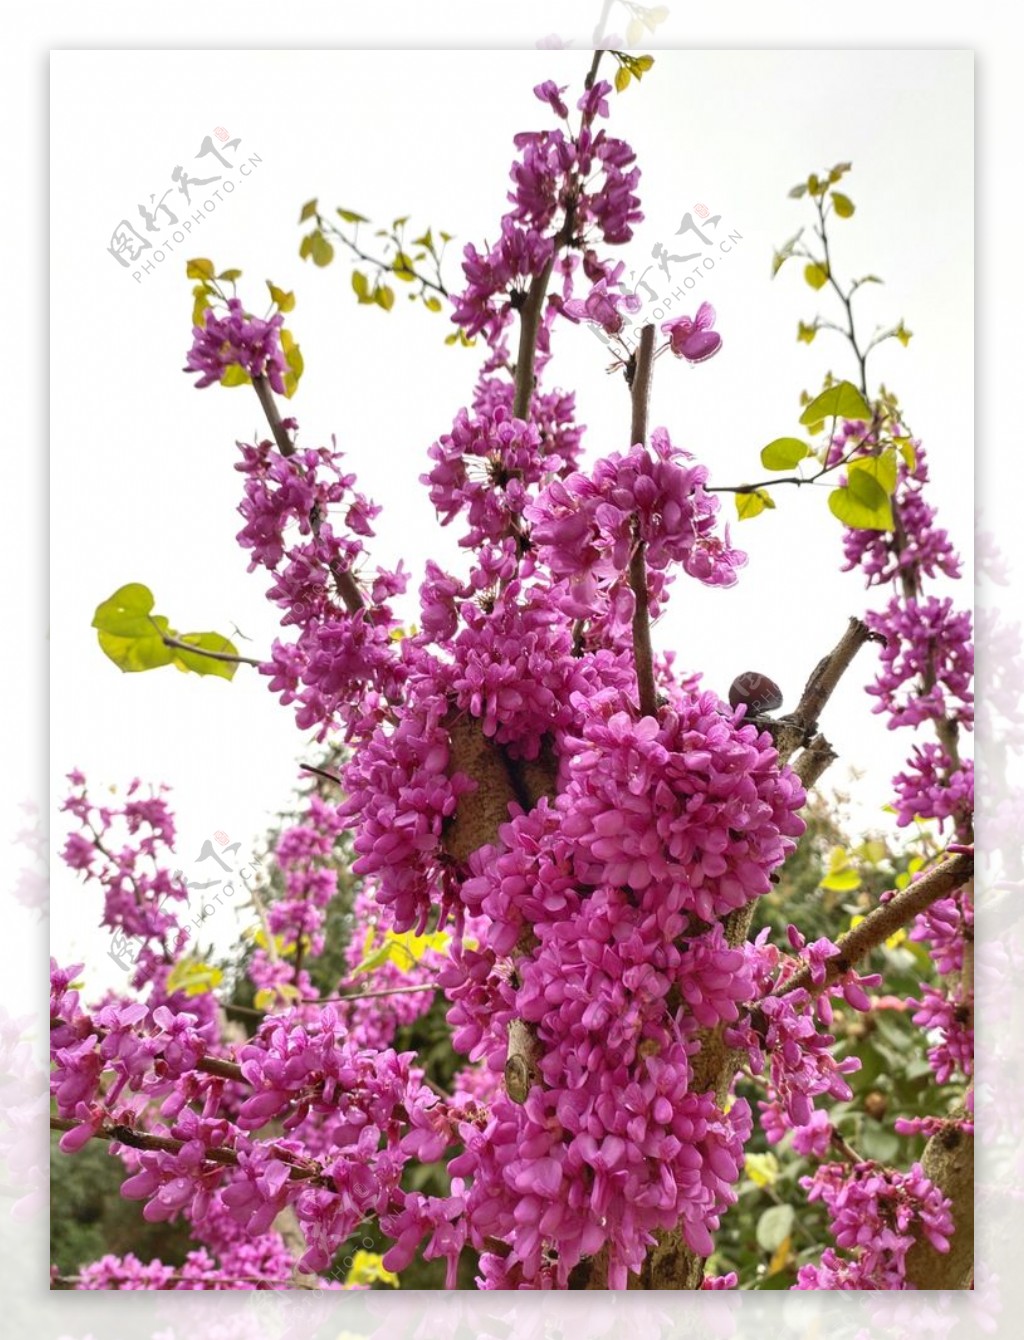 紫色花簇